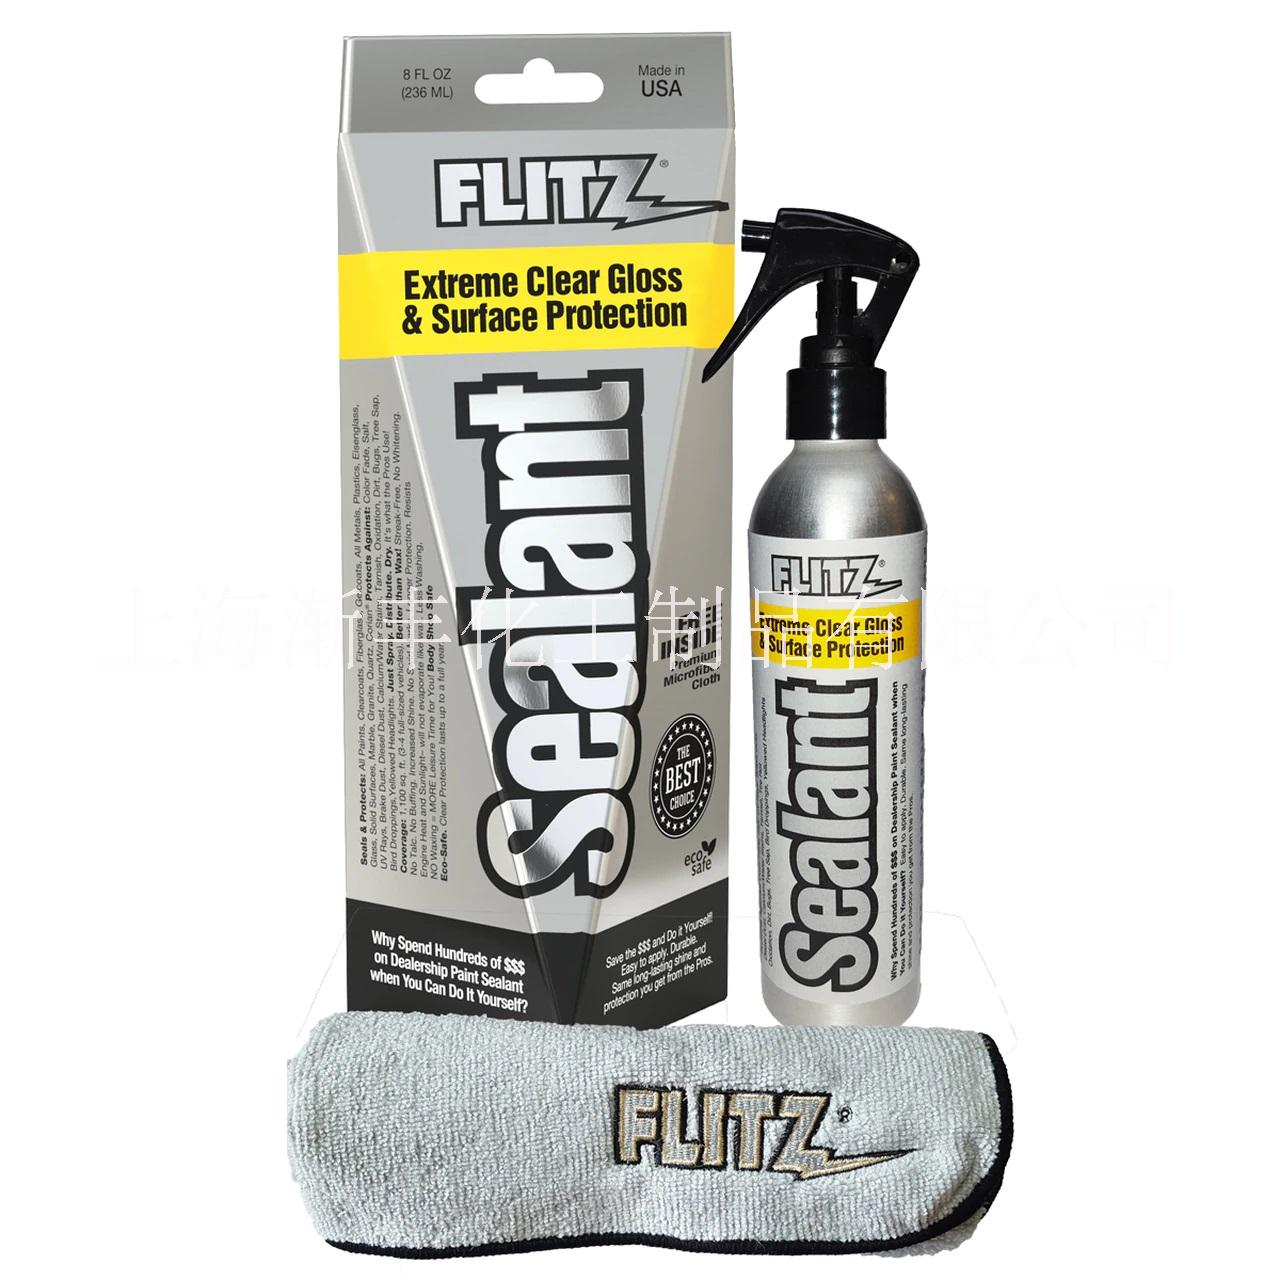 Flitz Sealant 镀膜防锈剂 漆面保护剂 玻璃保护剂 金属防护剂 游艇清洁保护剂